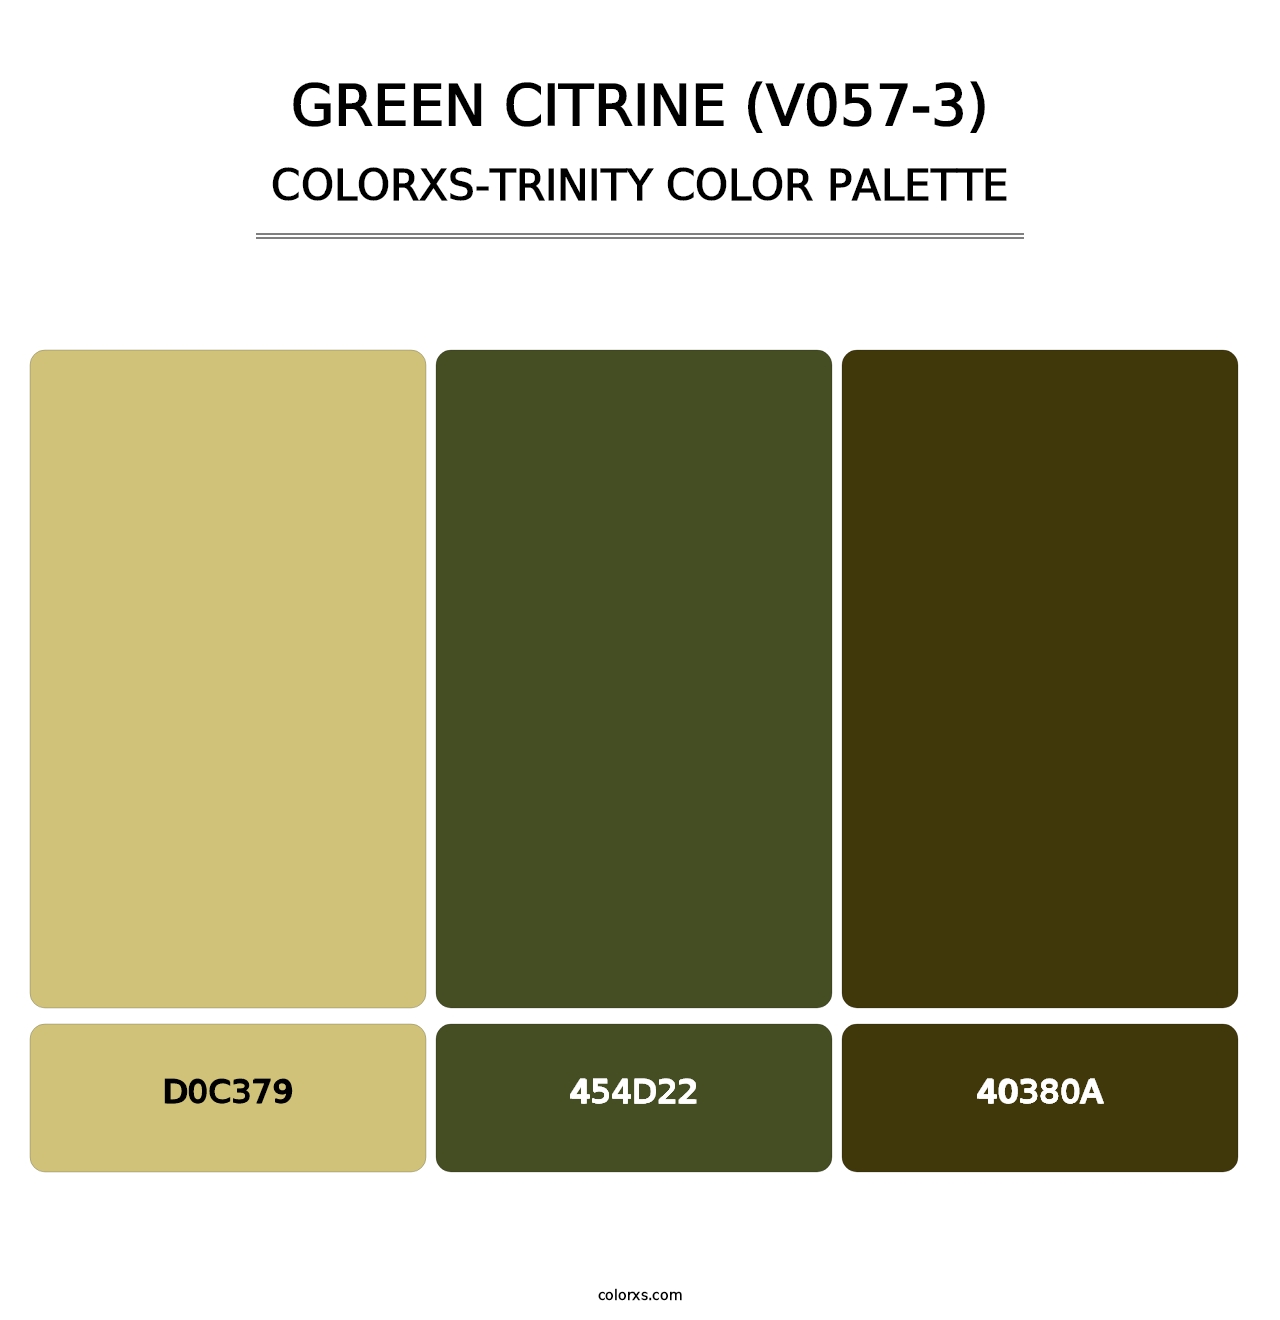 Green Citrine (V057-3) - Colorxs Trinity Palette